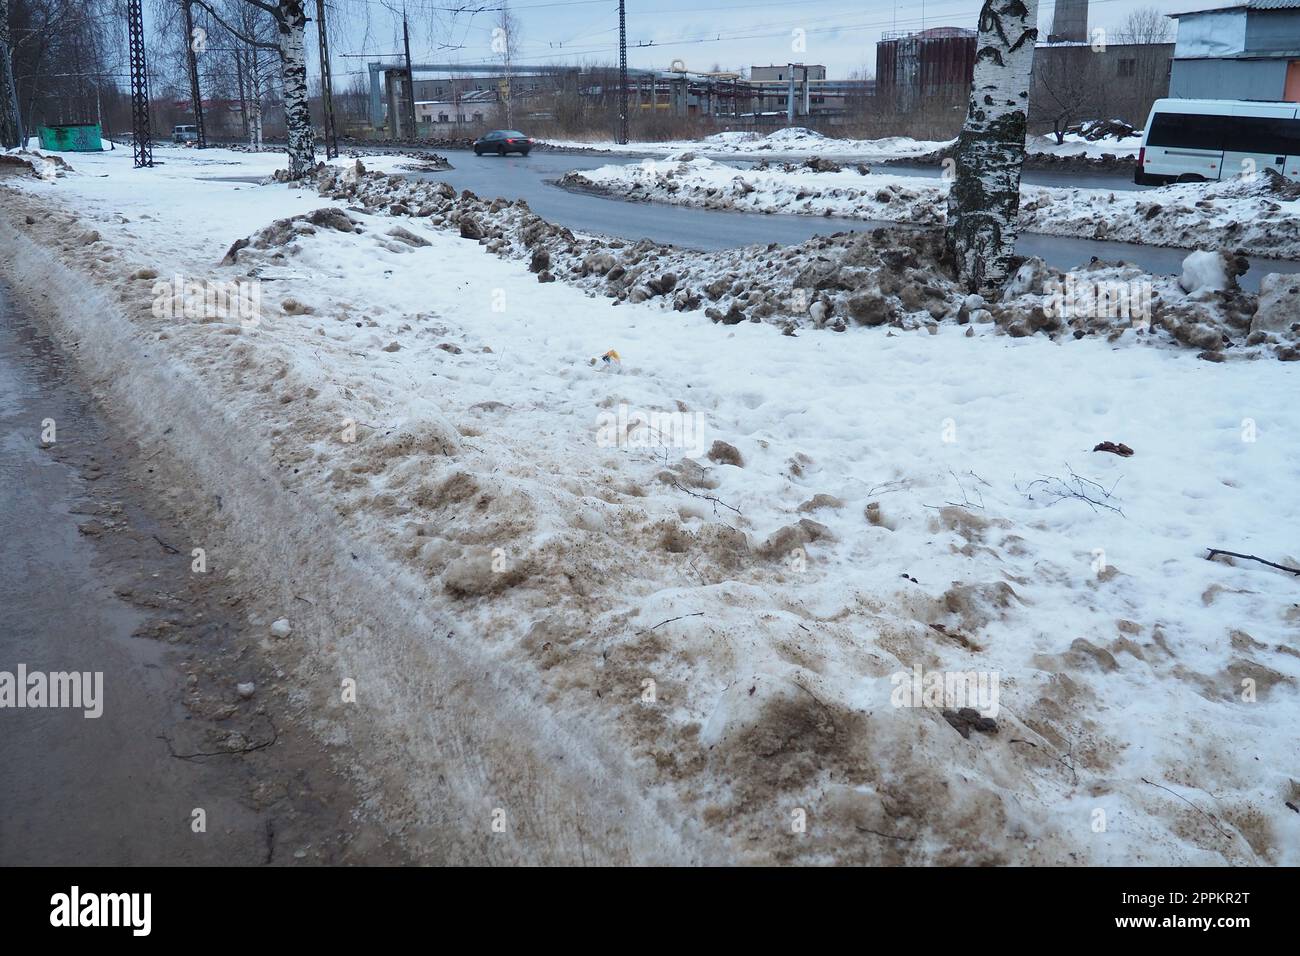 Petrozavodsk, Russland, 01,15. 2023 Schnee, Eis, Matsch und Winterschlamm auf dem Bürgersteig. Die Lufttemperatur beträgt etwa 0 °C. Schwierige Fahrbedingungen. Infrastruktur, Straßendienste. Straßenbelag mit nassem Schnee Stockfoto